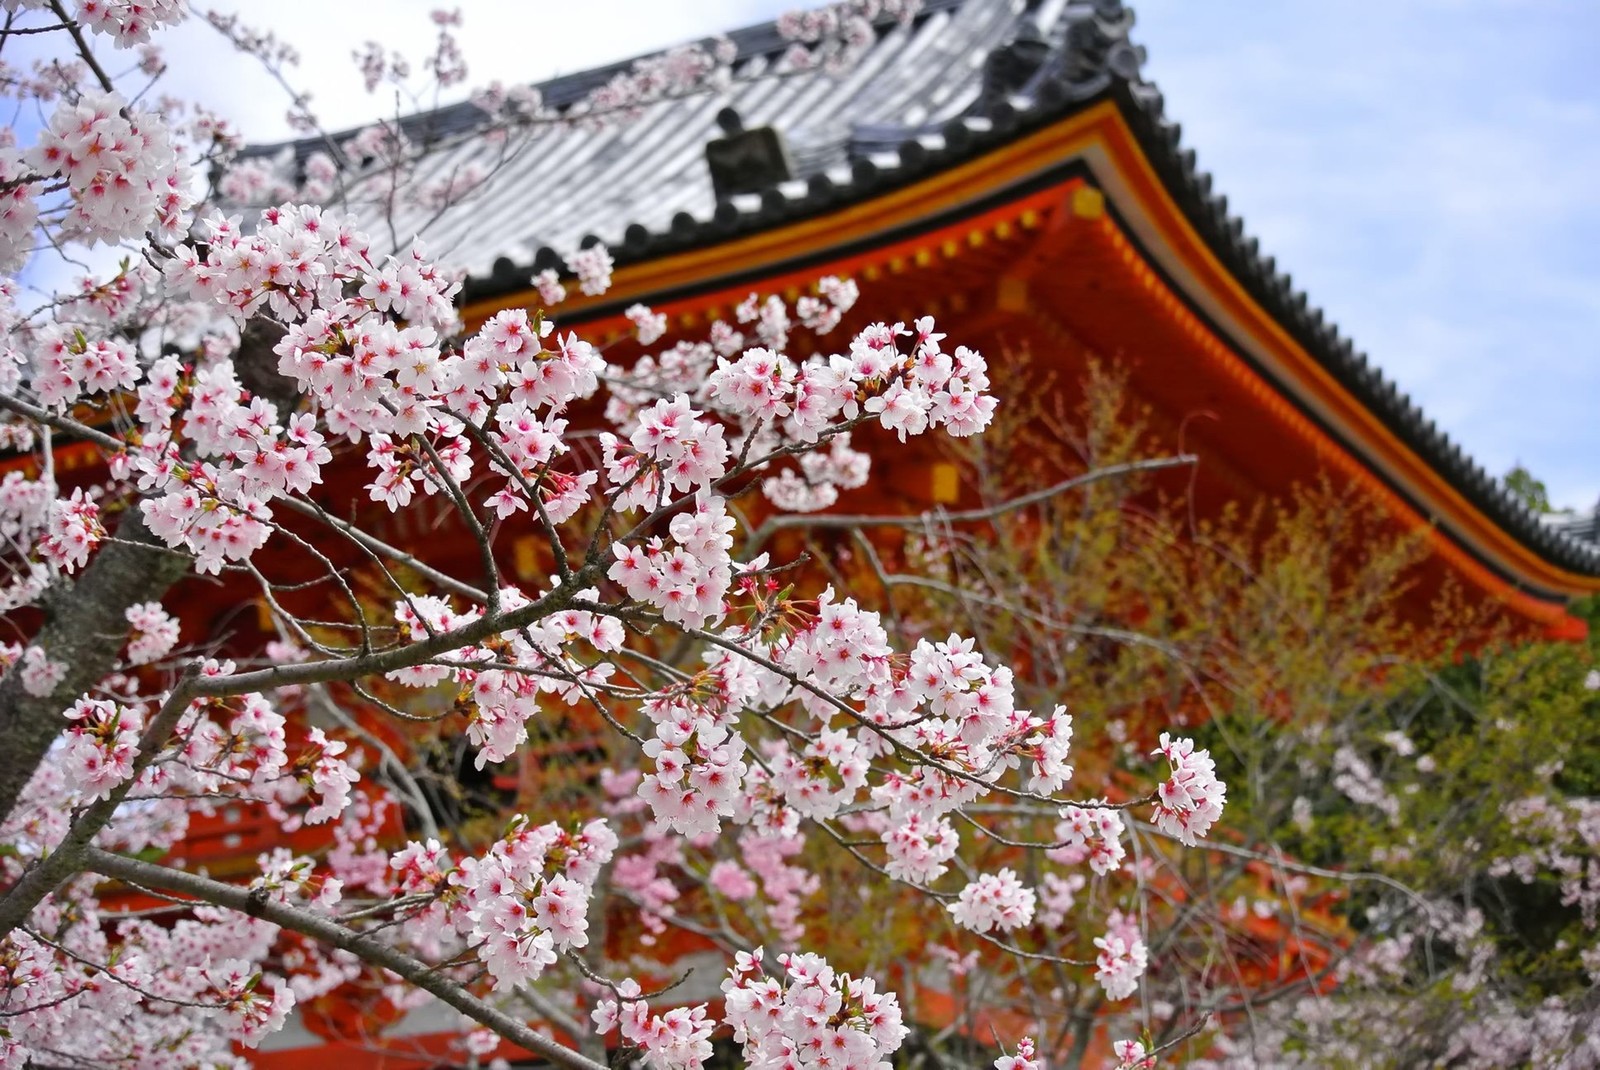 六波羅蜜寺は京都のパワースポットとして有名 見どころや御朱印も紹介 Travelnote トラベルノート